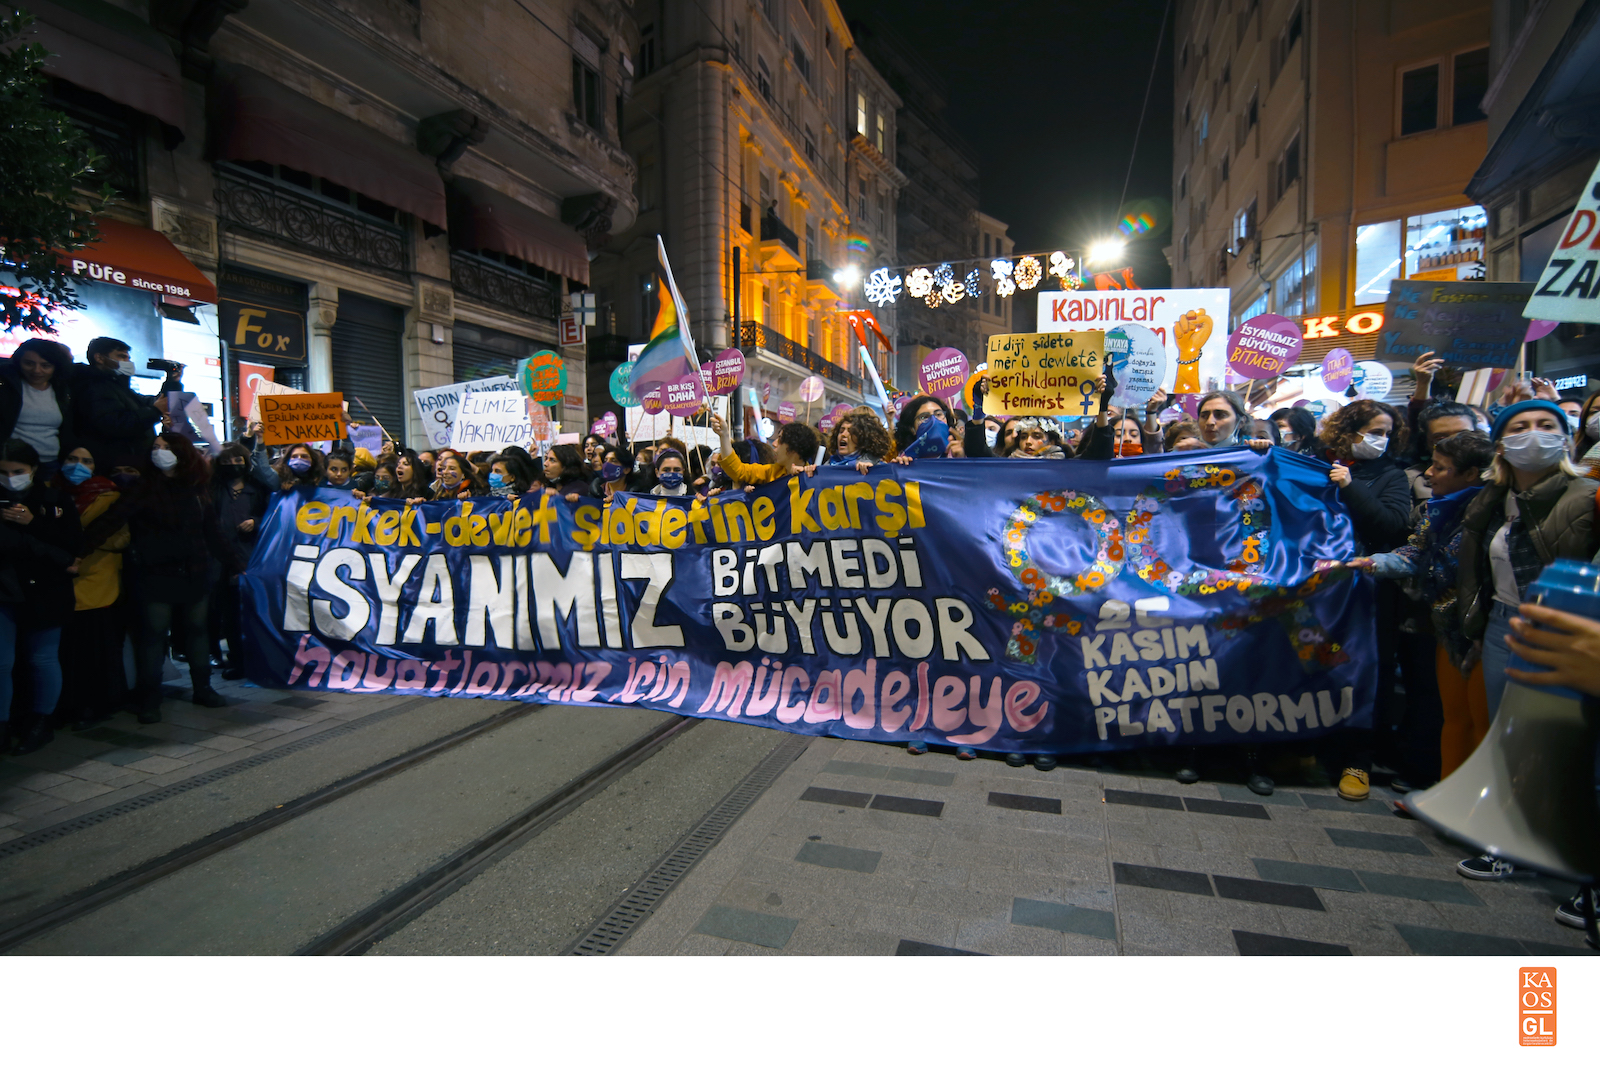 İstanbul’da 25 Kasım: Gücümüz birbirimizde! | Kaos GL - LGBTİ+ Haber Portalı